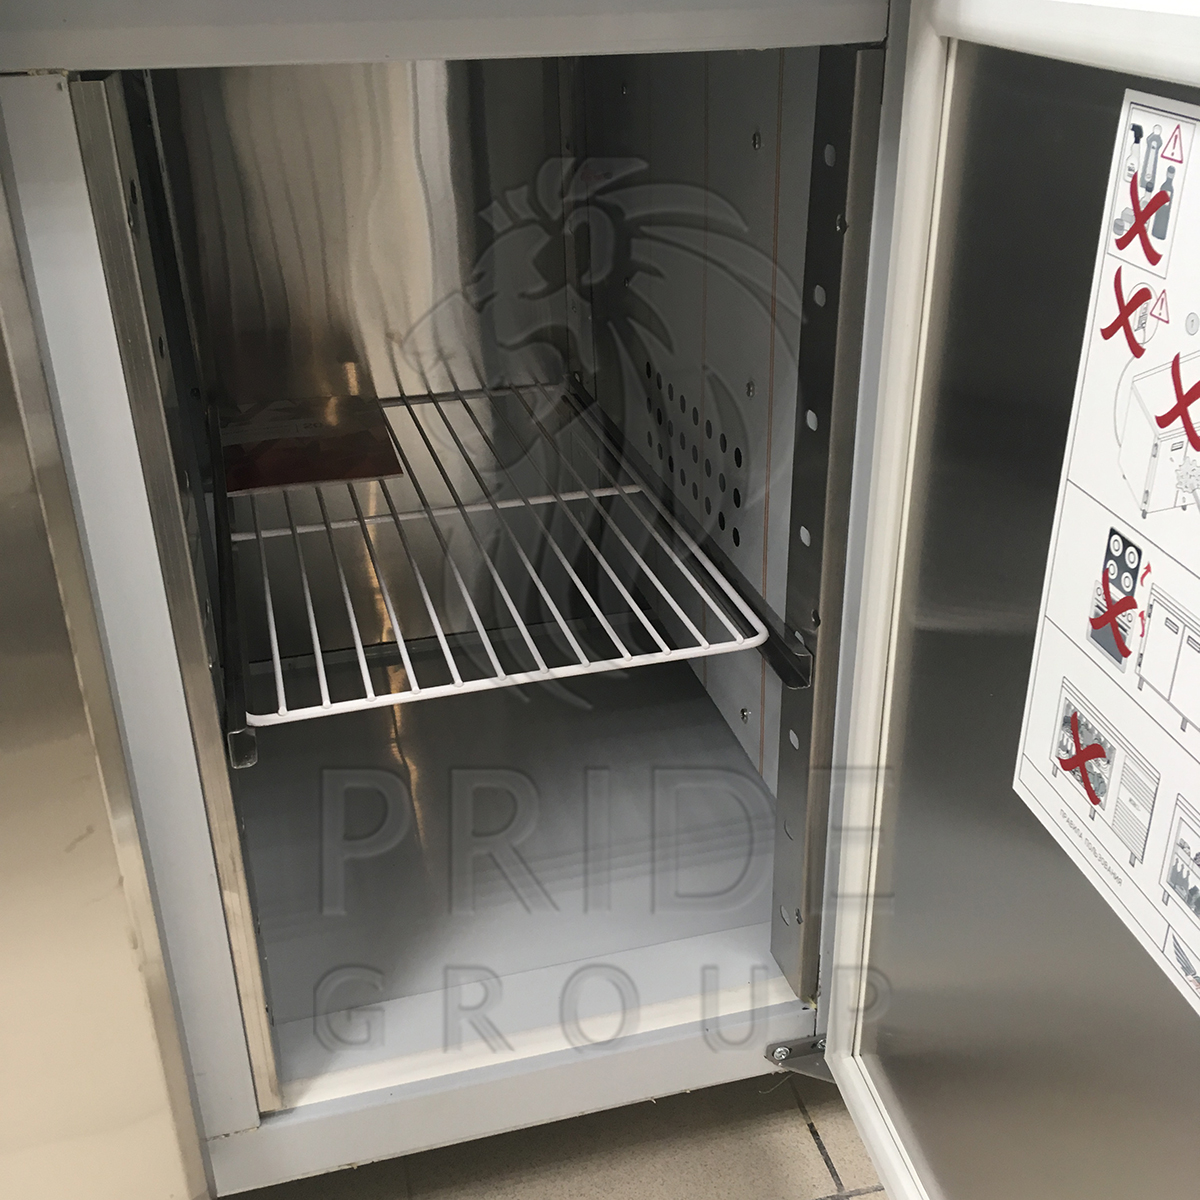 Стол холодильный для пиццы Finist СХСпцг-700-1 гранит 900х700х850 мм